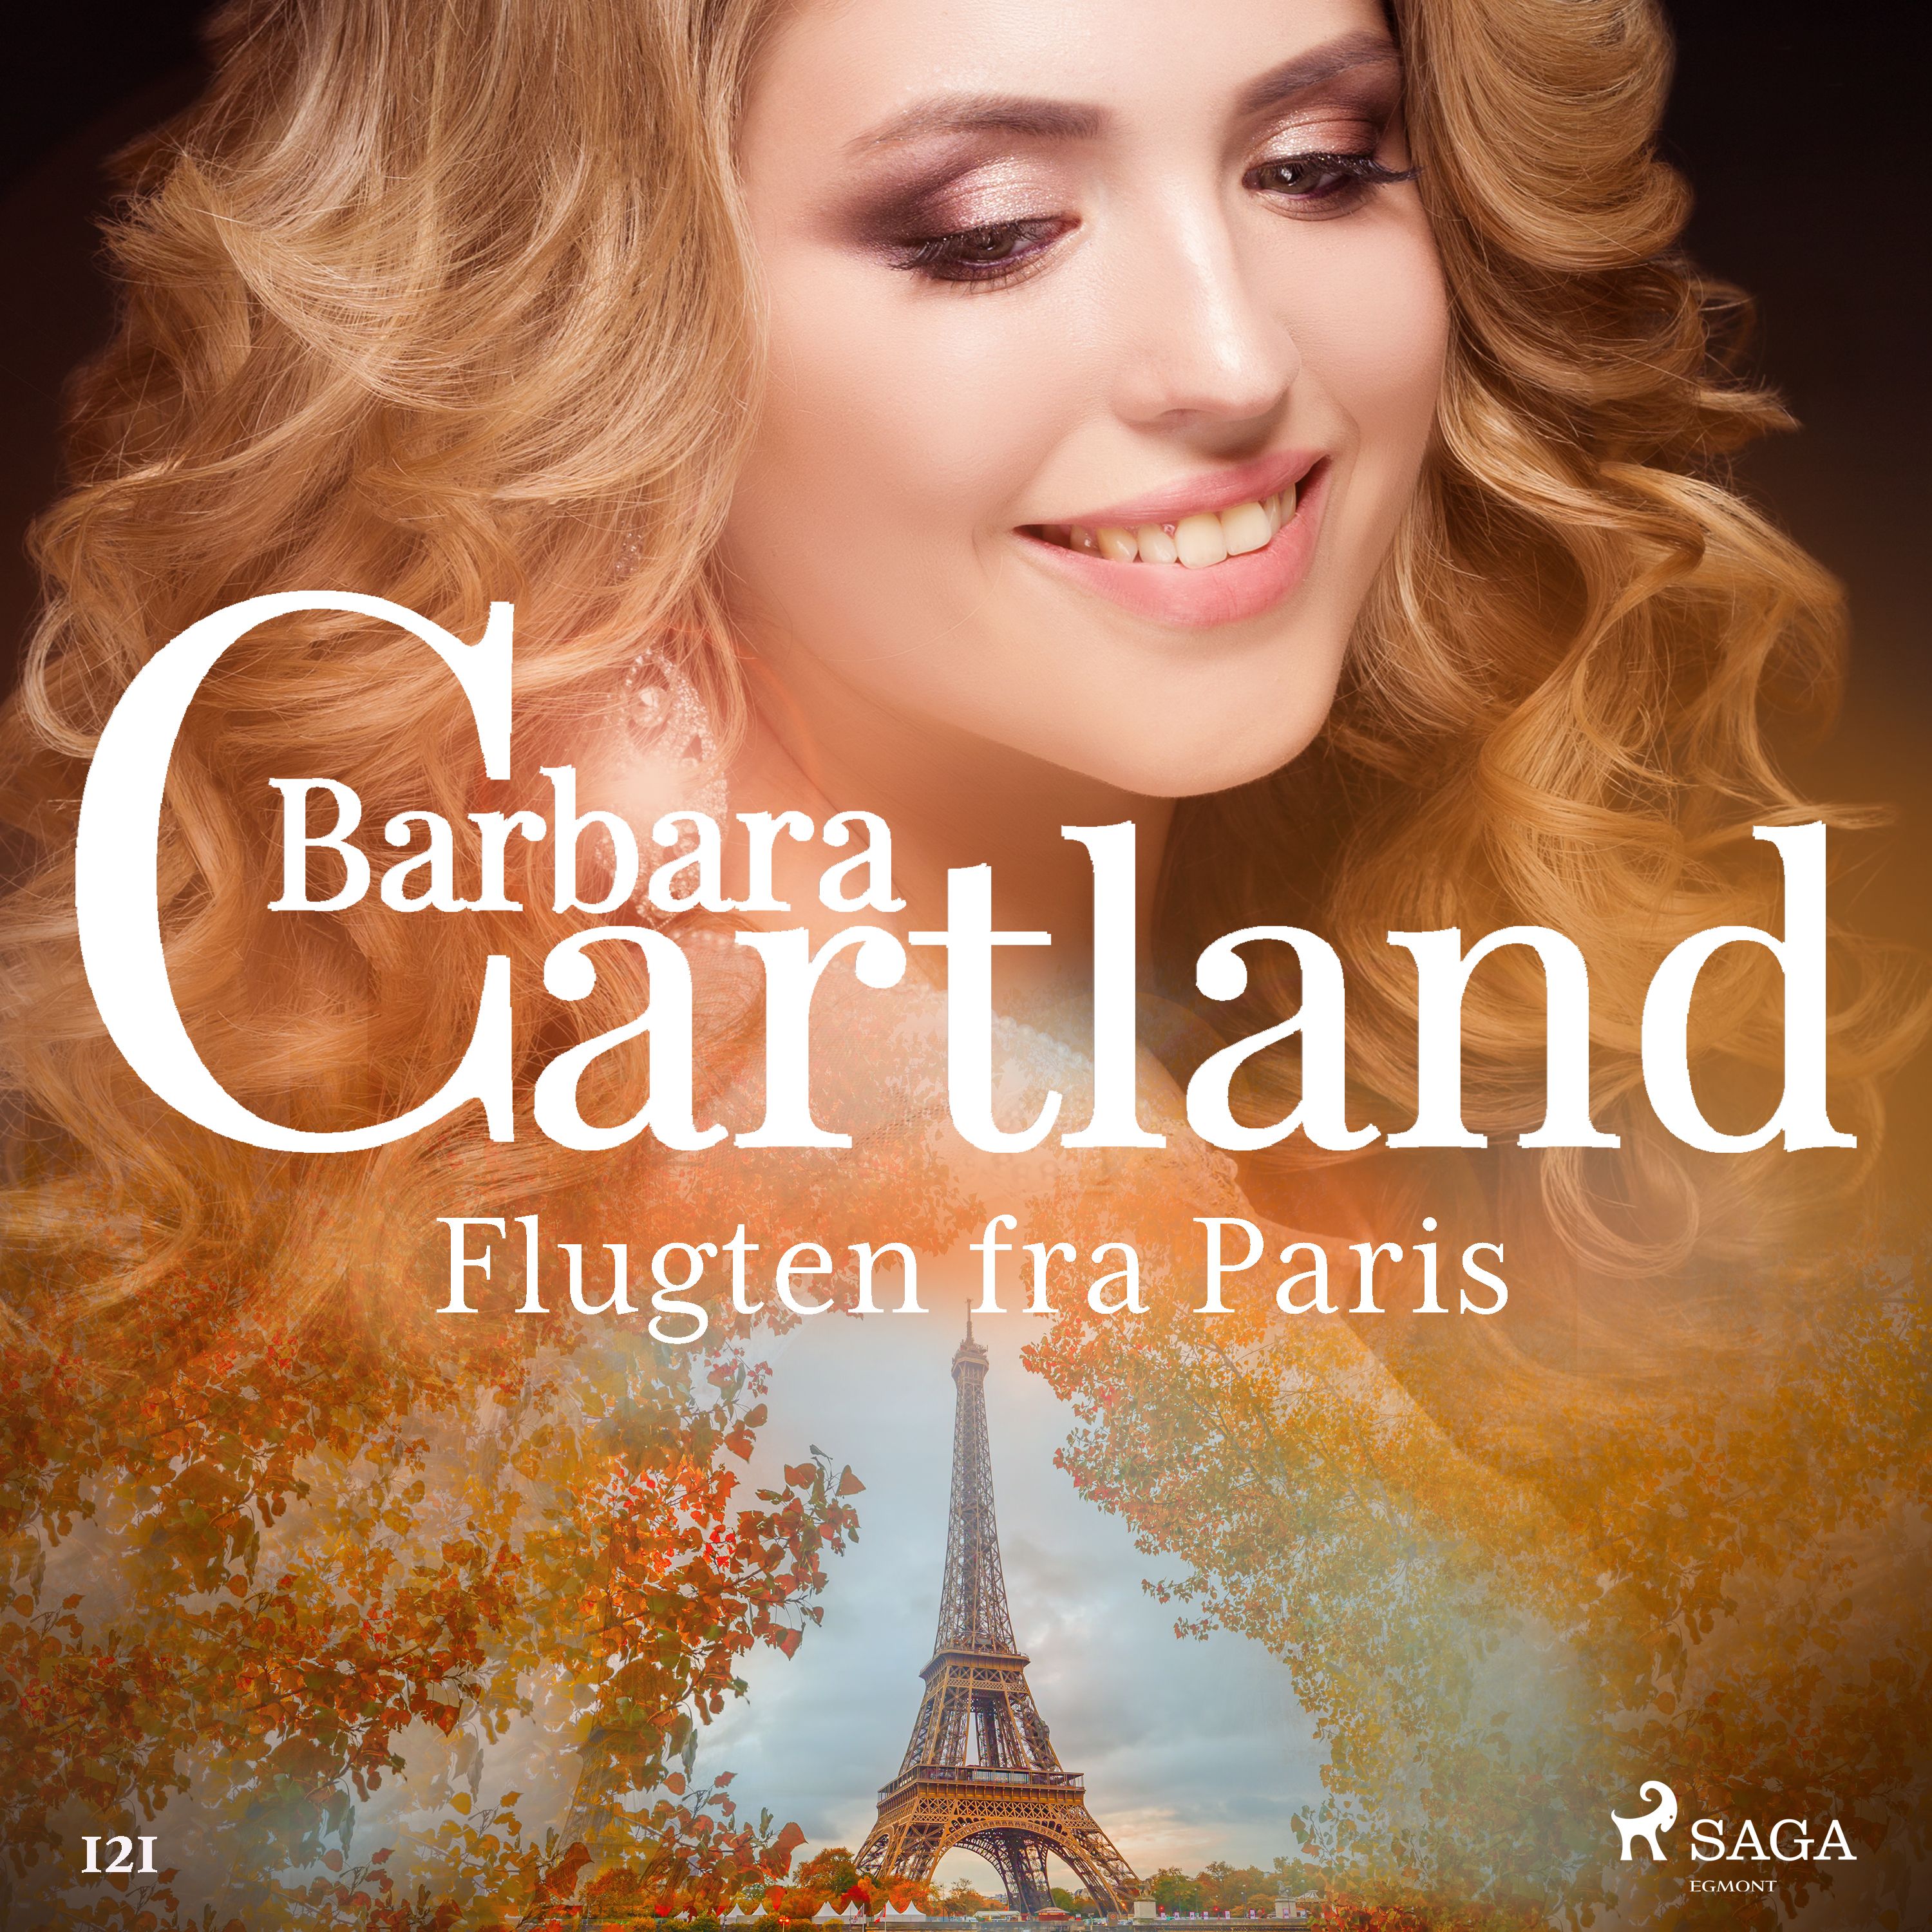 Flugten fra Paris, ljudbok av Barbara Cartland